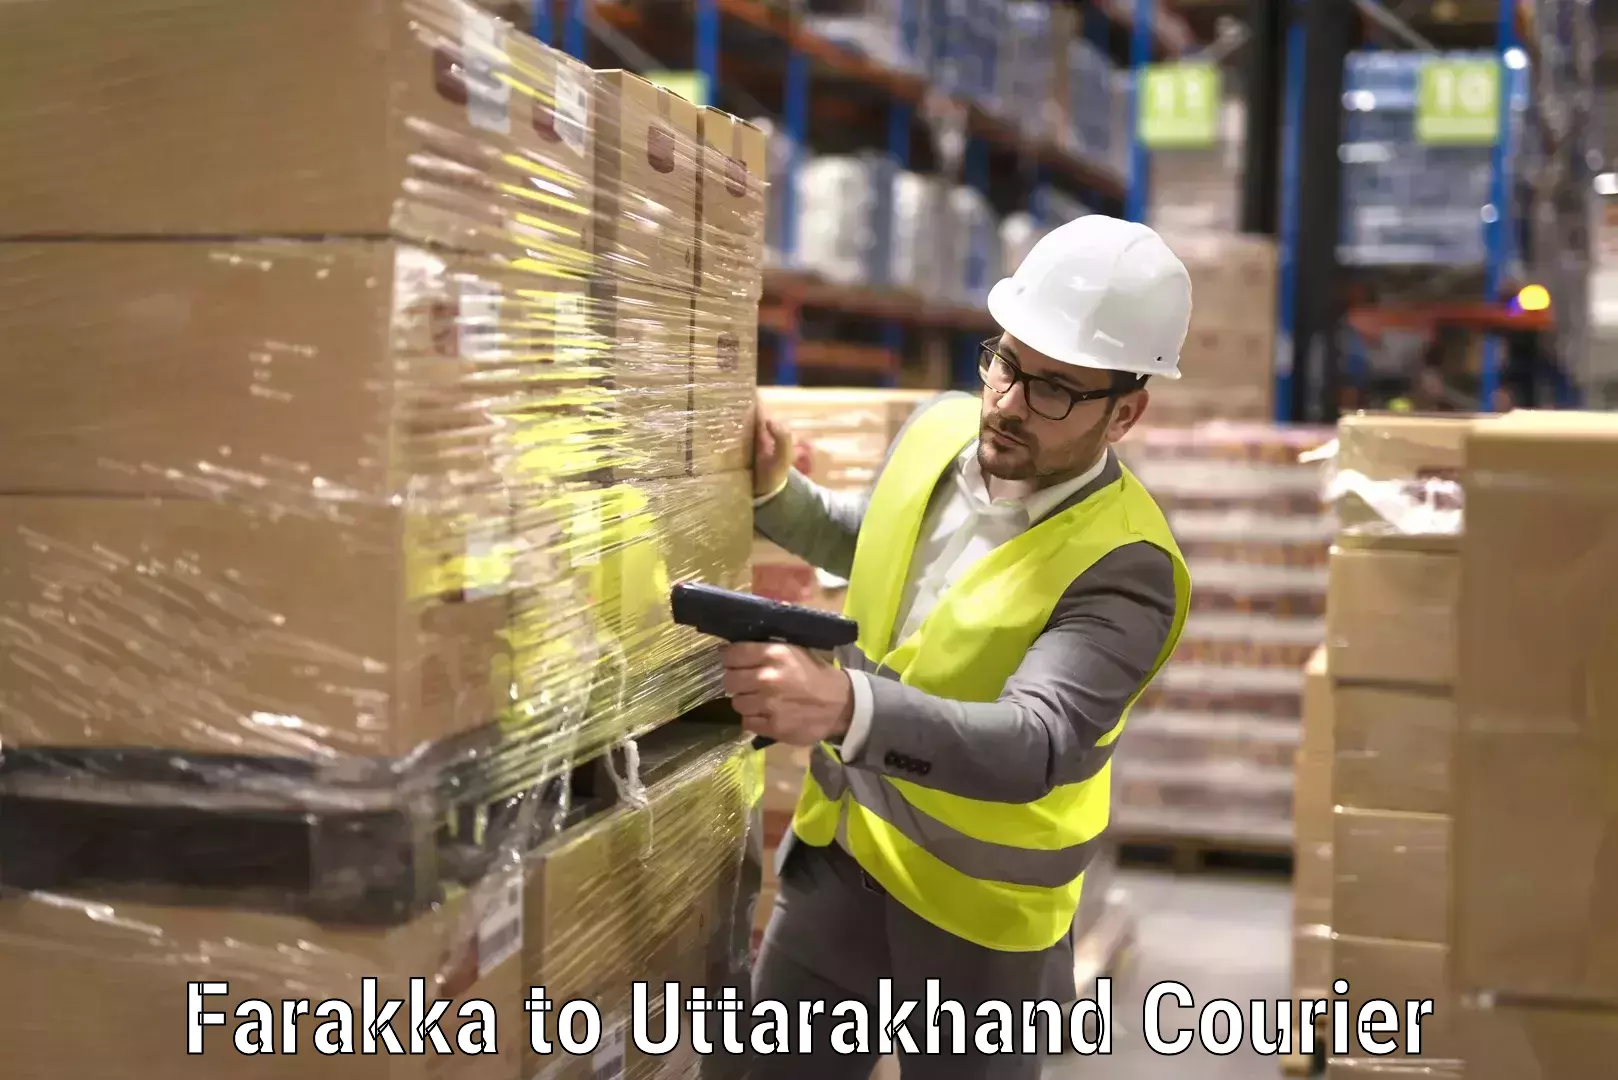 Furniture moving experts Farakka to Uttarakhand